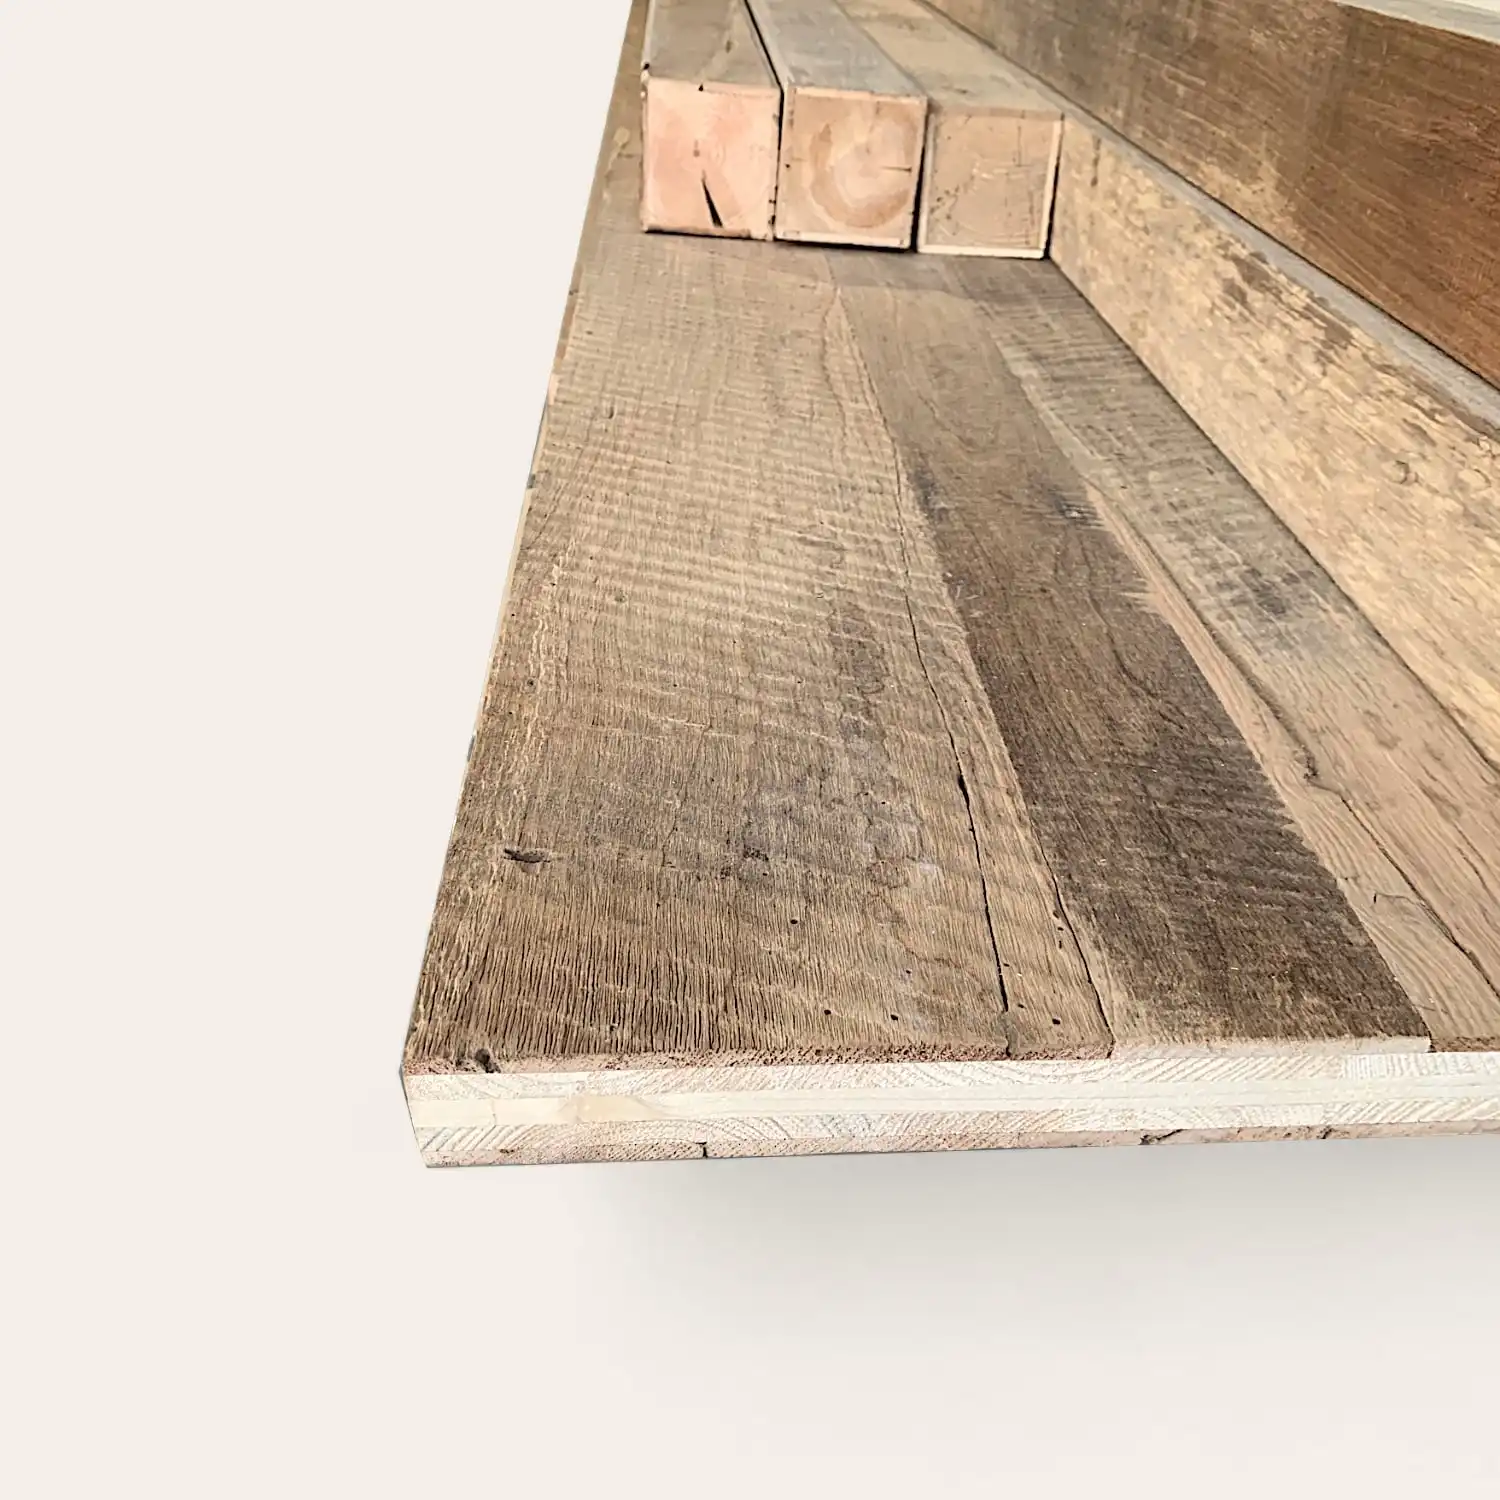  Gros plan d'une pile de planches de bois vieillies avec grain et texture visibles sur fond blanc, étiquetées panneaux vieux bois. 